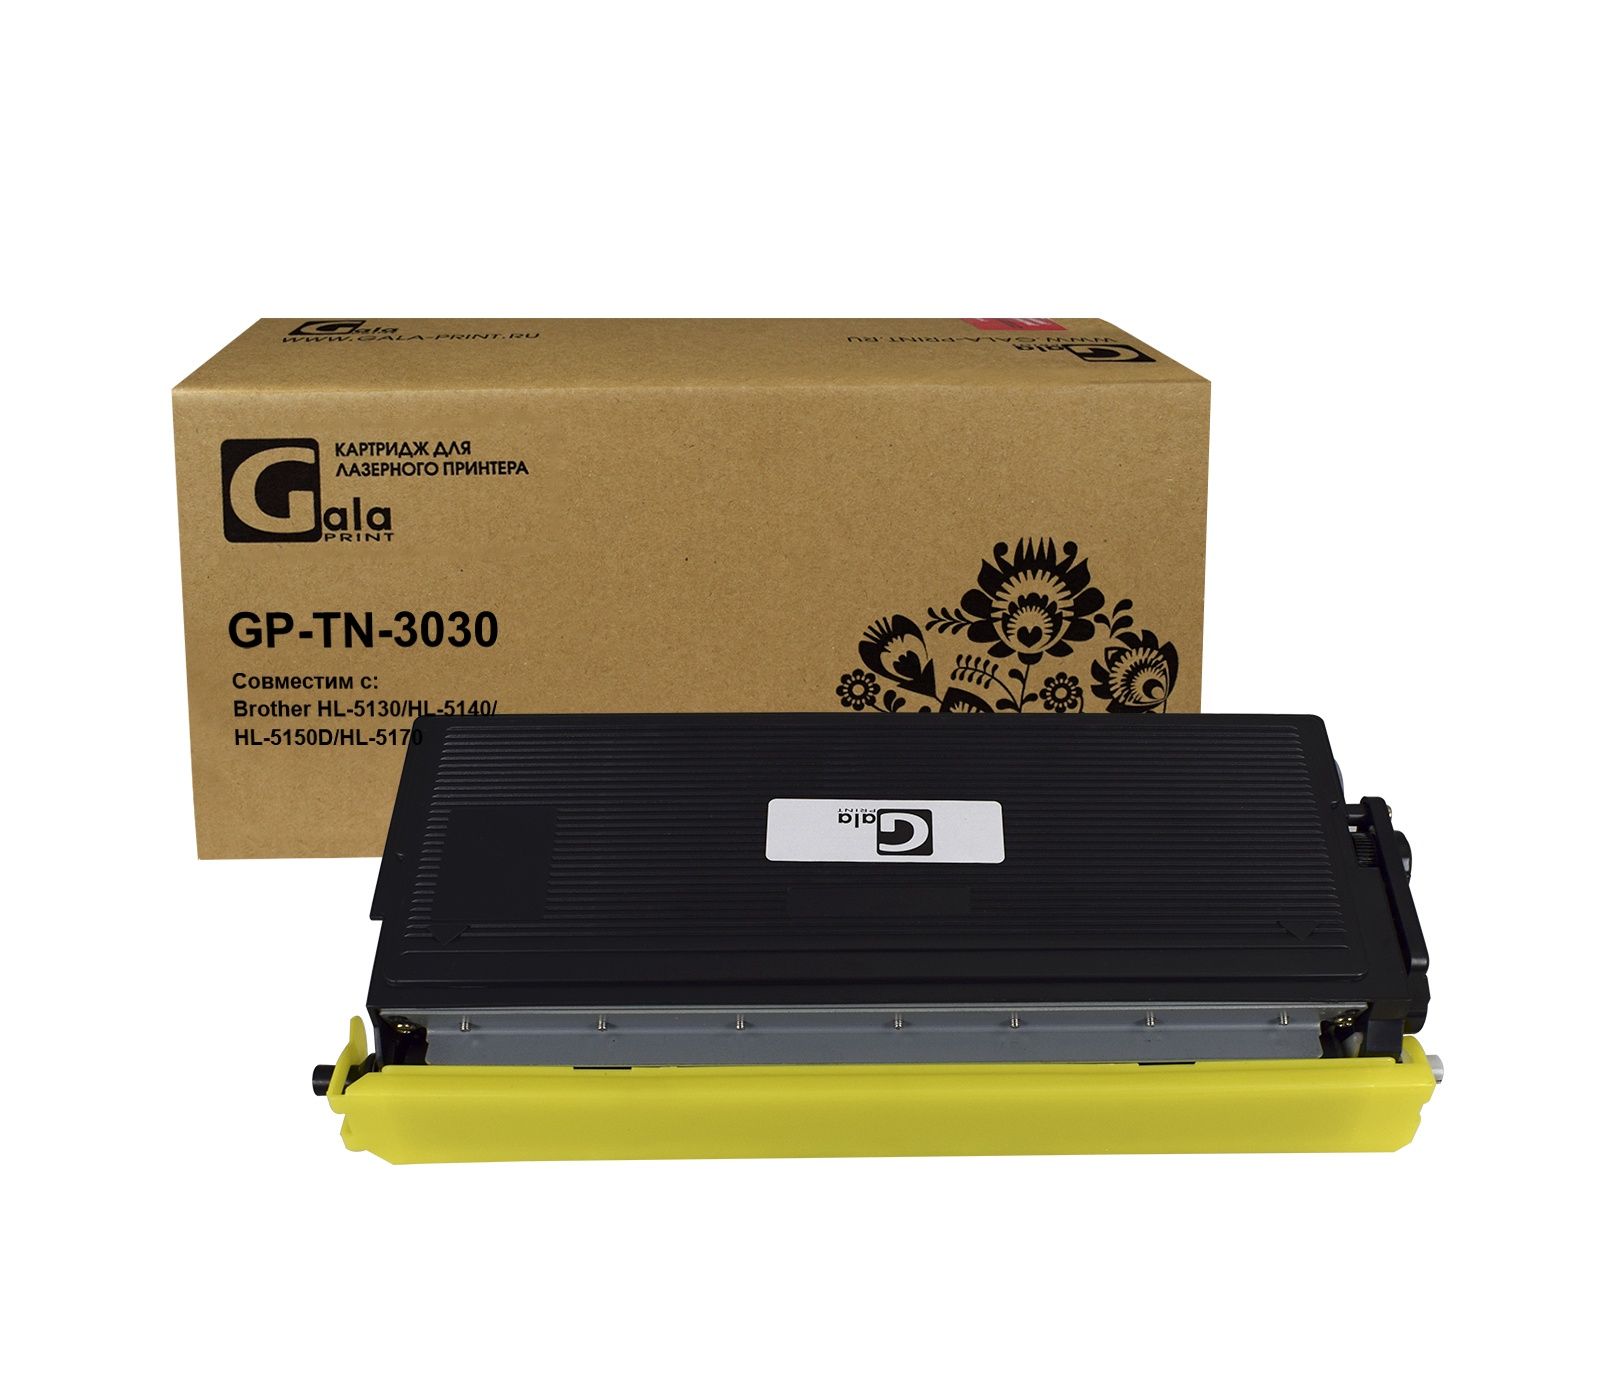 Картридж GP-TN-3030 для принтеров Brother HL-5130/HL-5140/HL-5150D/HL-5170 3500 копий GalaPrint